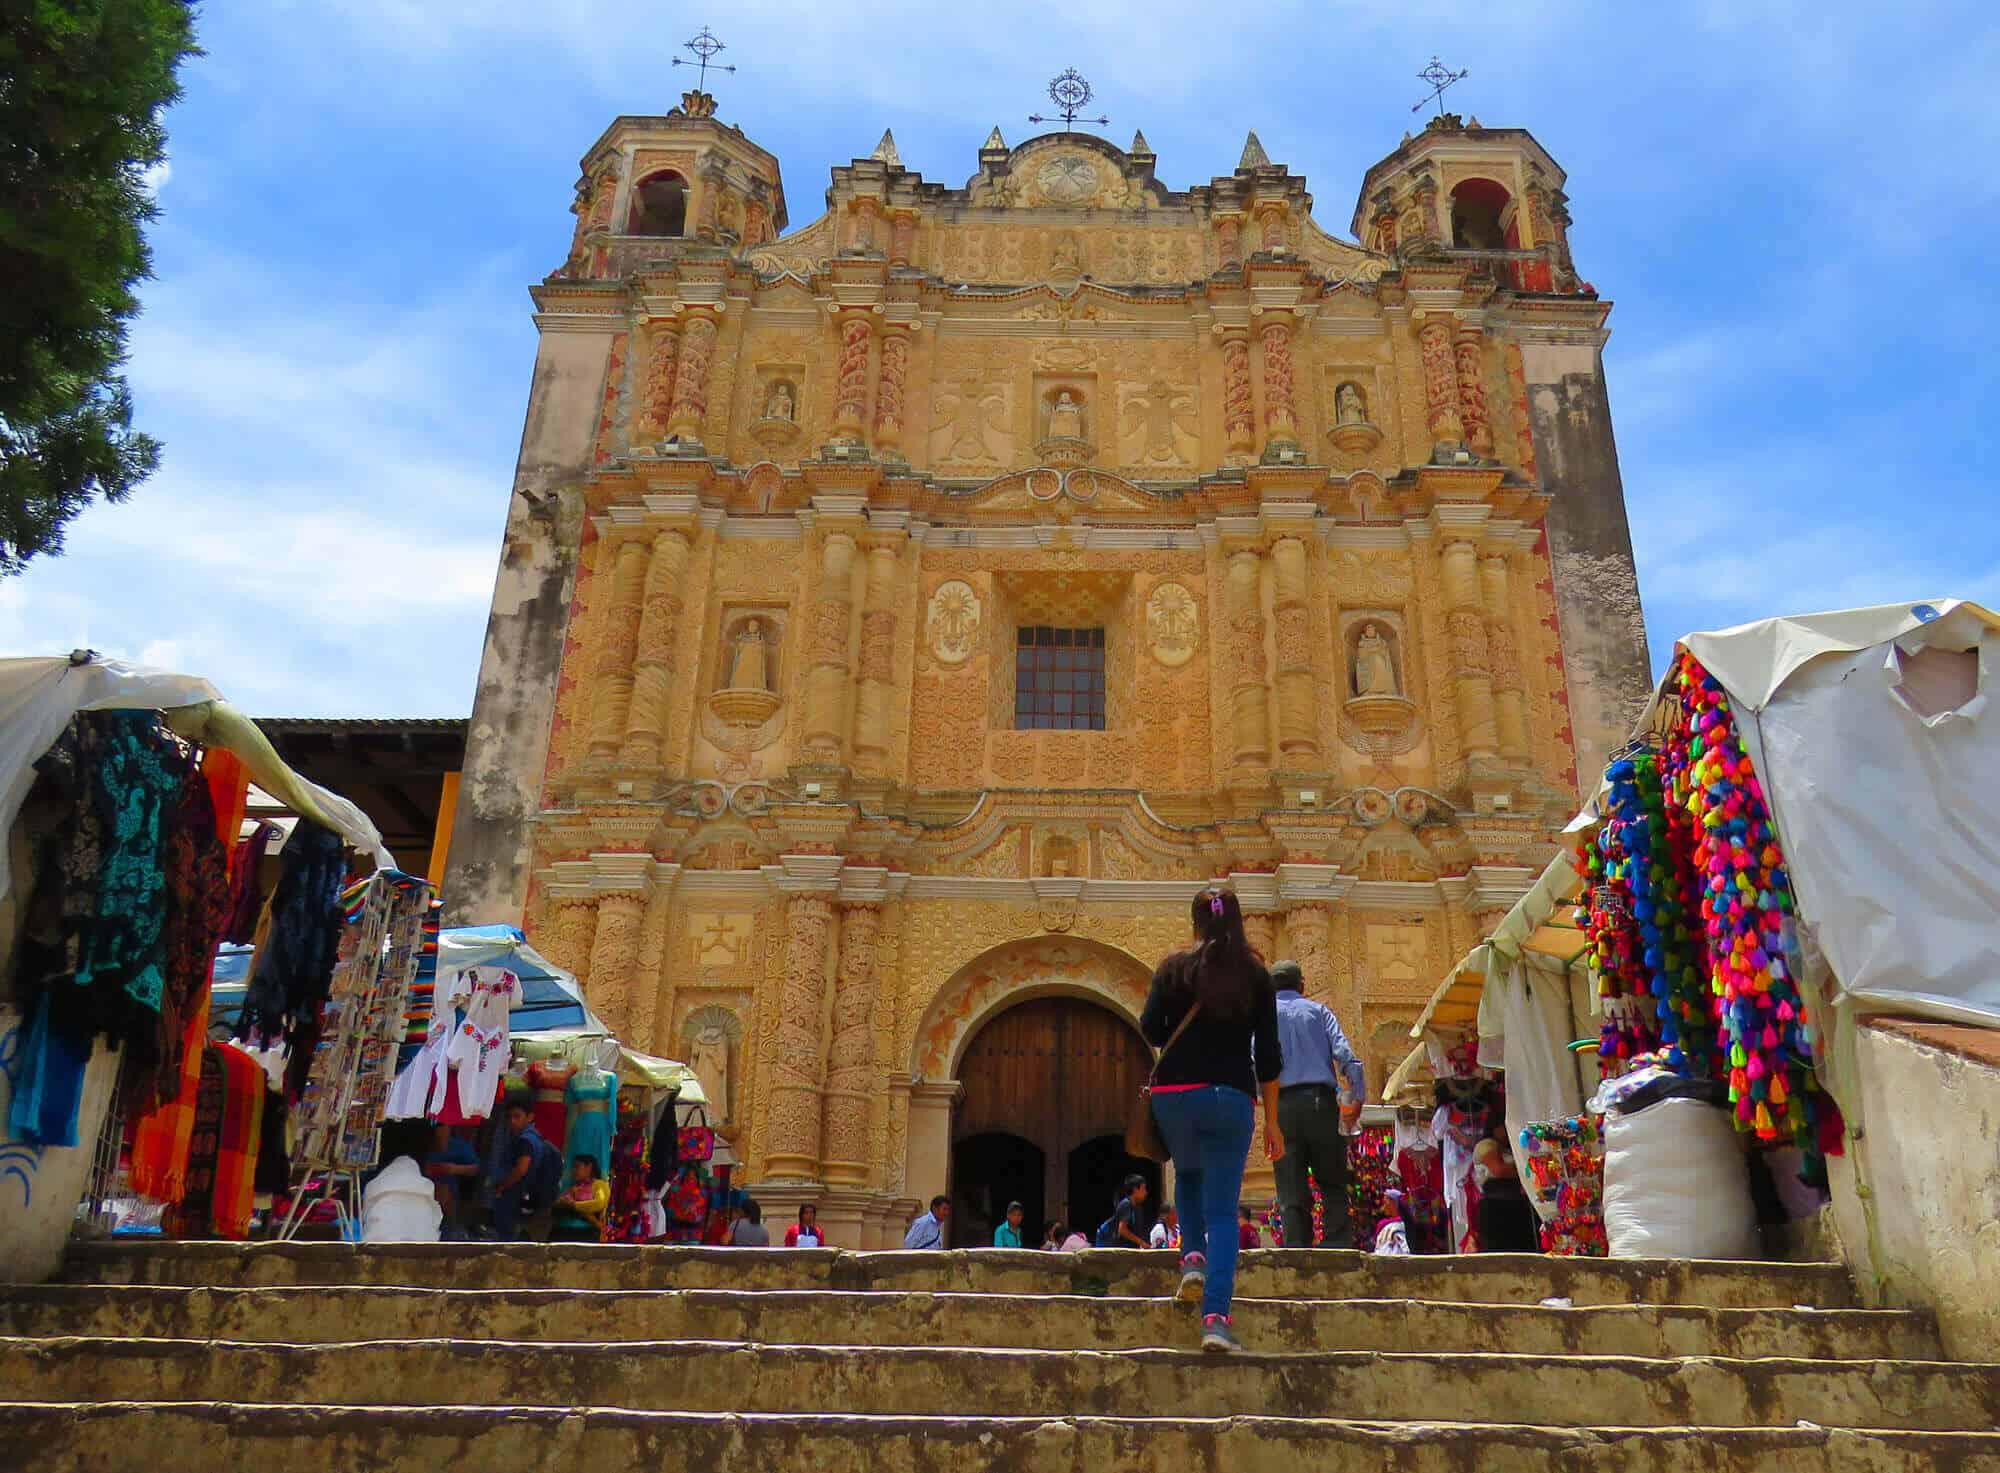 San Cristobal de las Casas. A roadtrip through Mexico’s most beautiful towns and cities